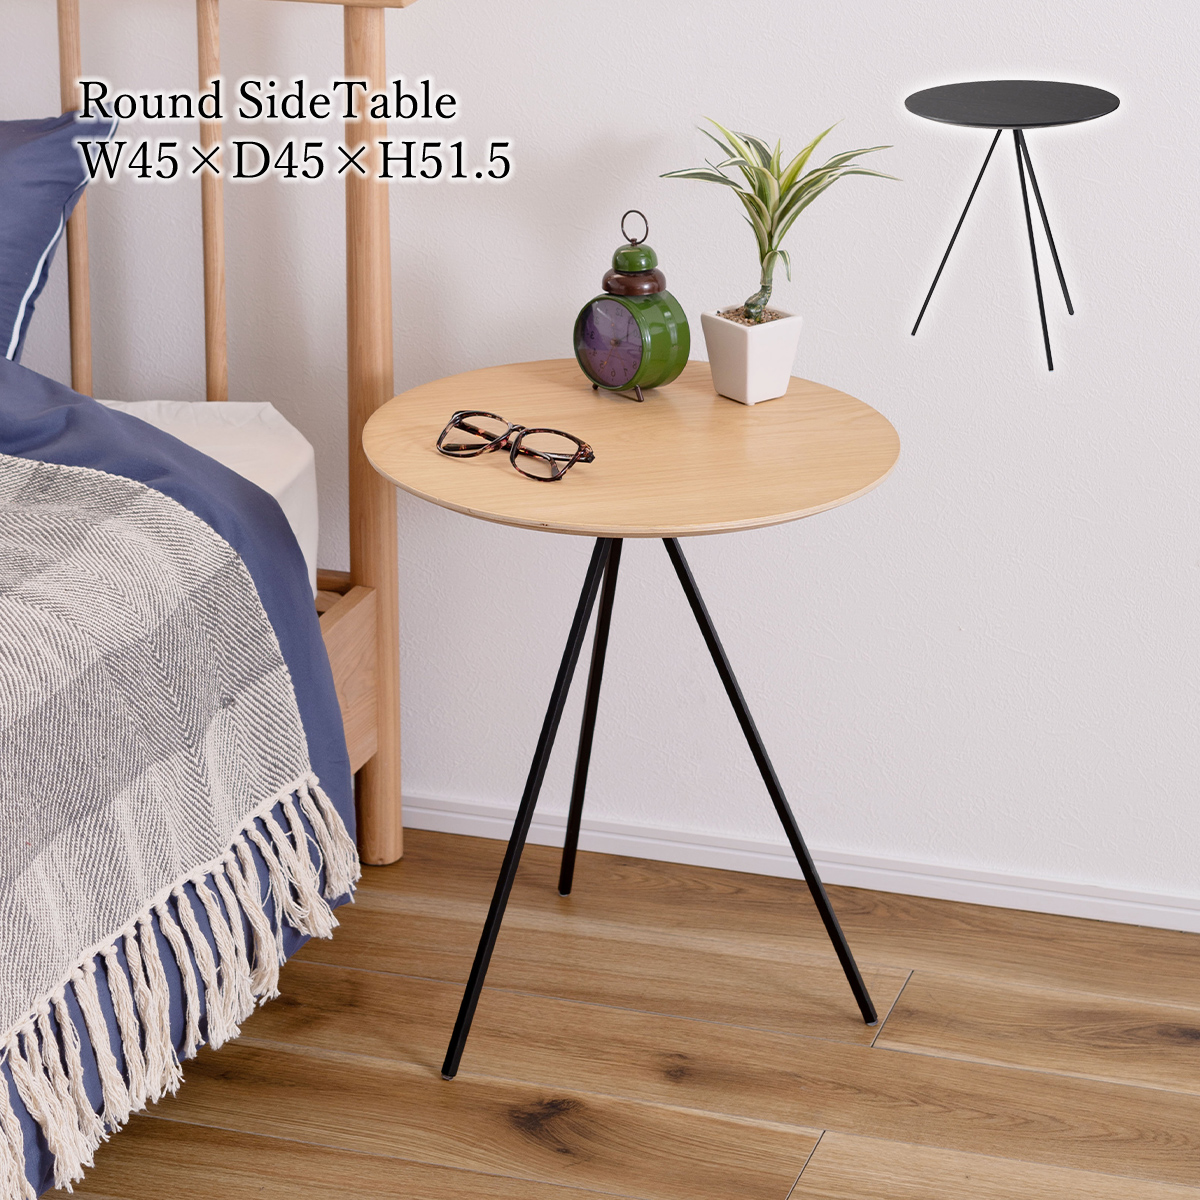 サイドテーブル テーブル ナイトテーブル アイアン 木製 天然木 オーク おしゃれ シンプル ナチュラル ブラック ラウンド 丸型 幅45cm  高さ51.5cm 3本脚